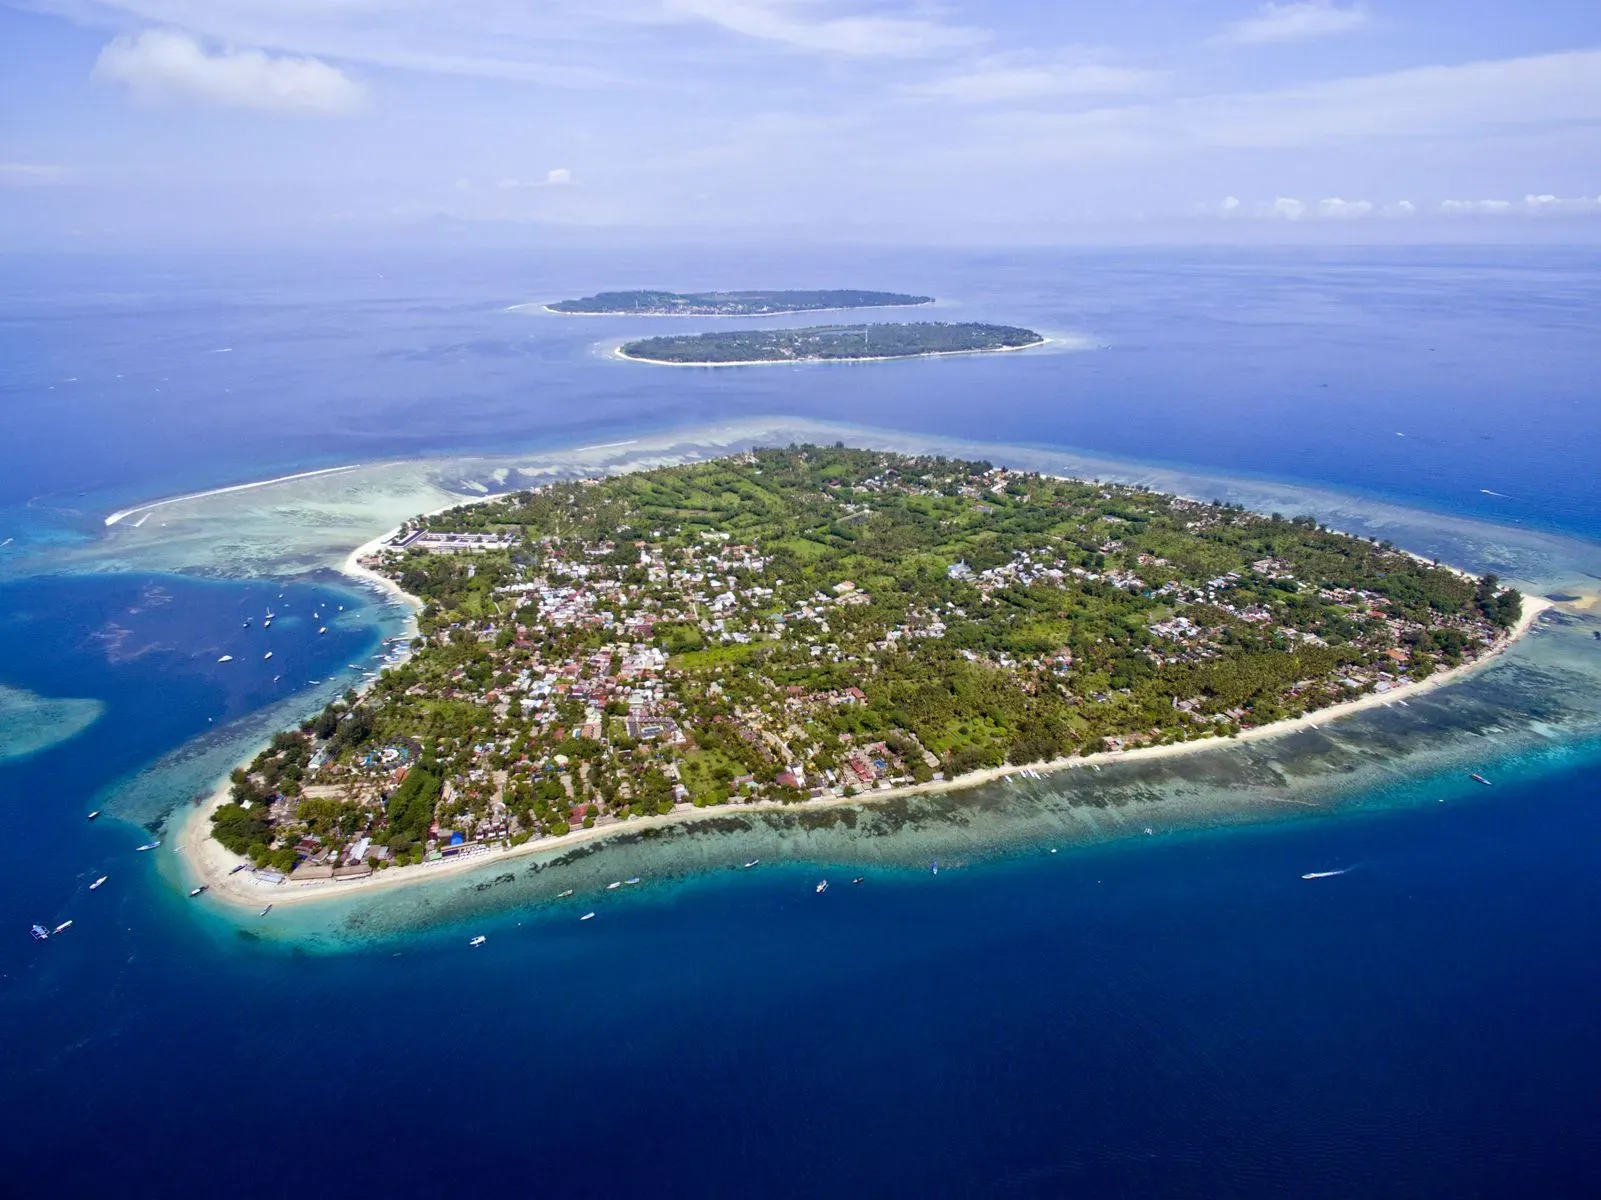 ТОП-10 самых удивительных локаций для туристов на Бали